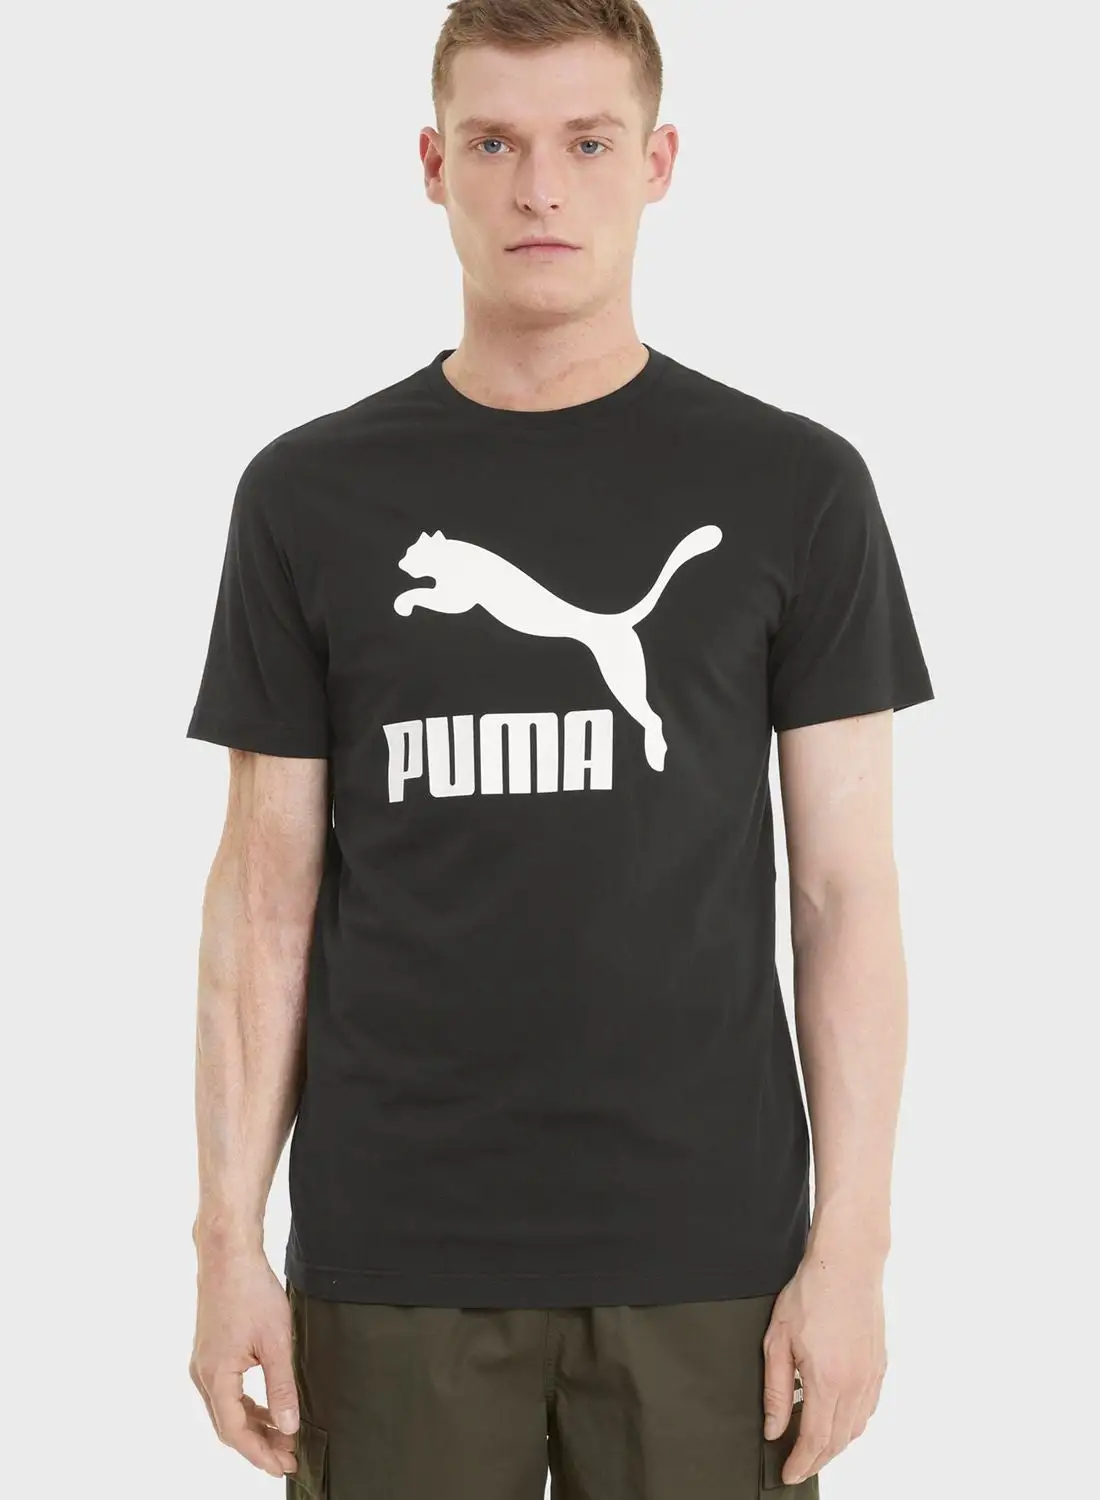 PUMA Classics men t-shirt